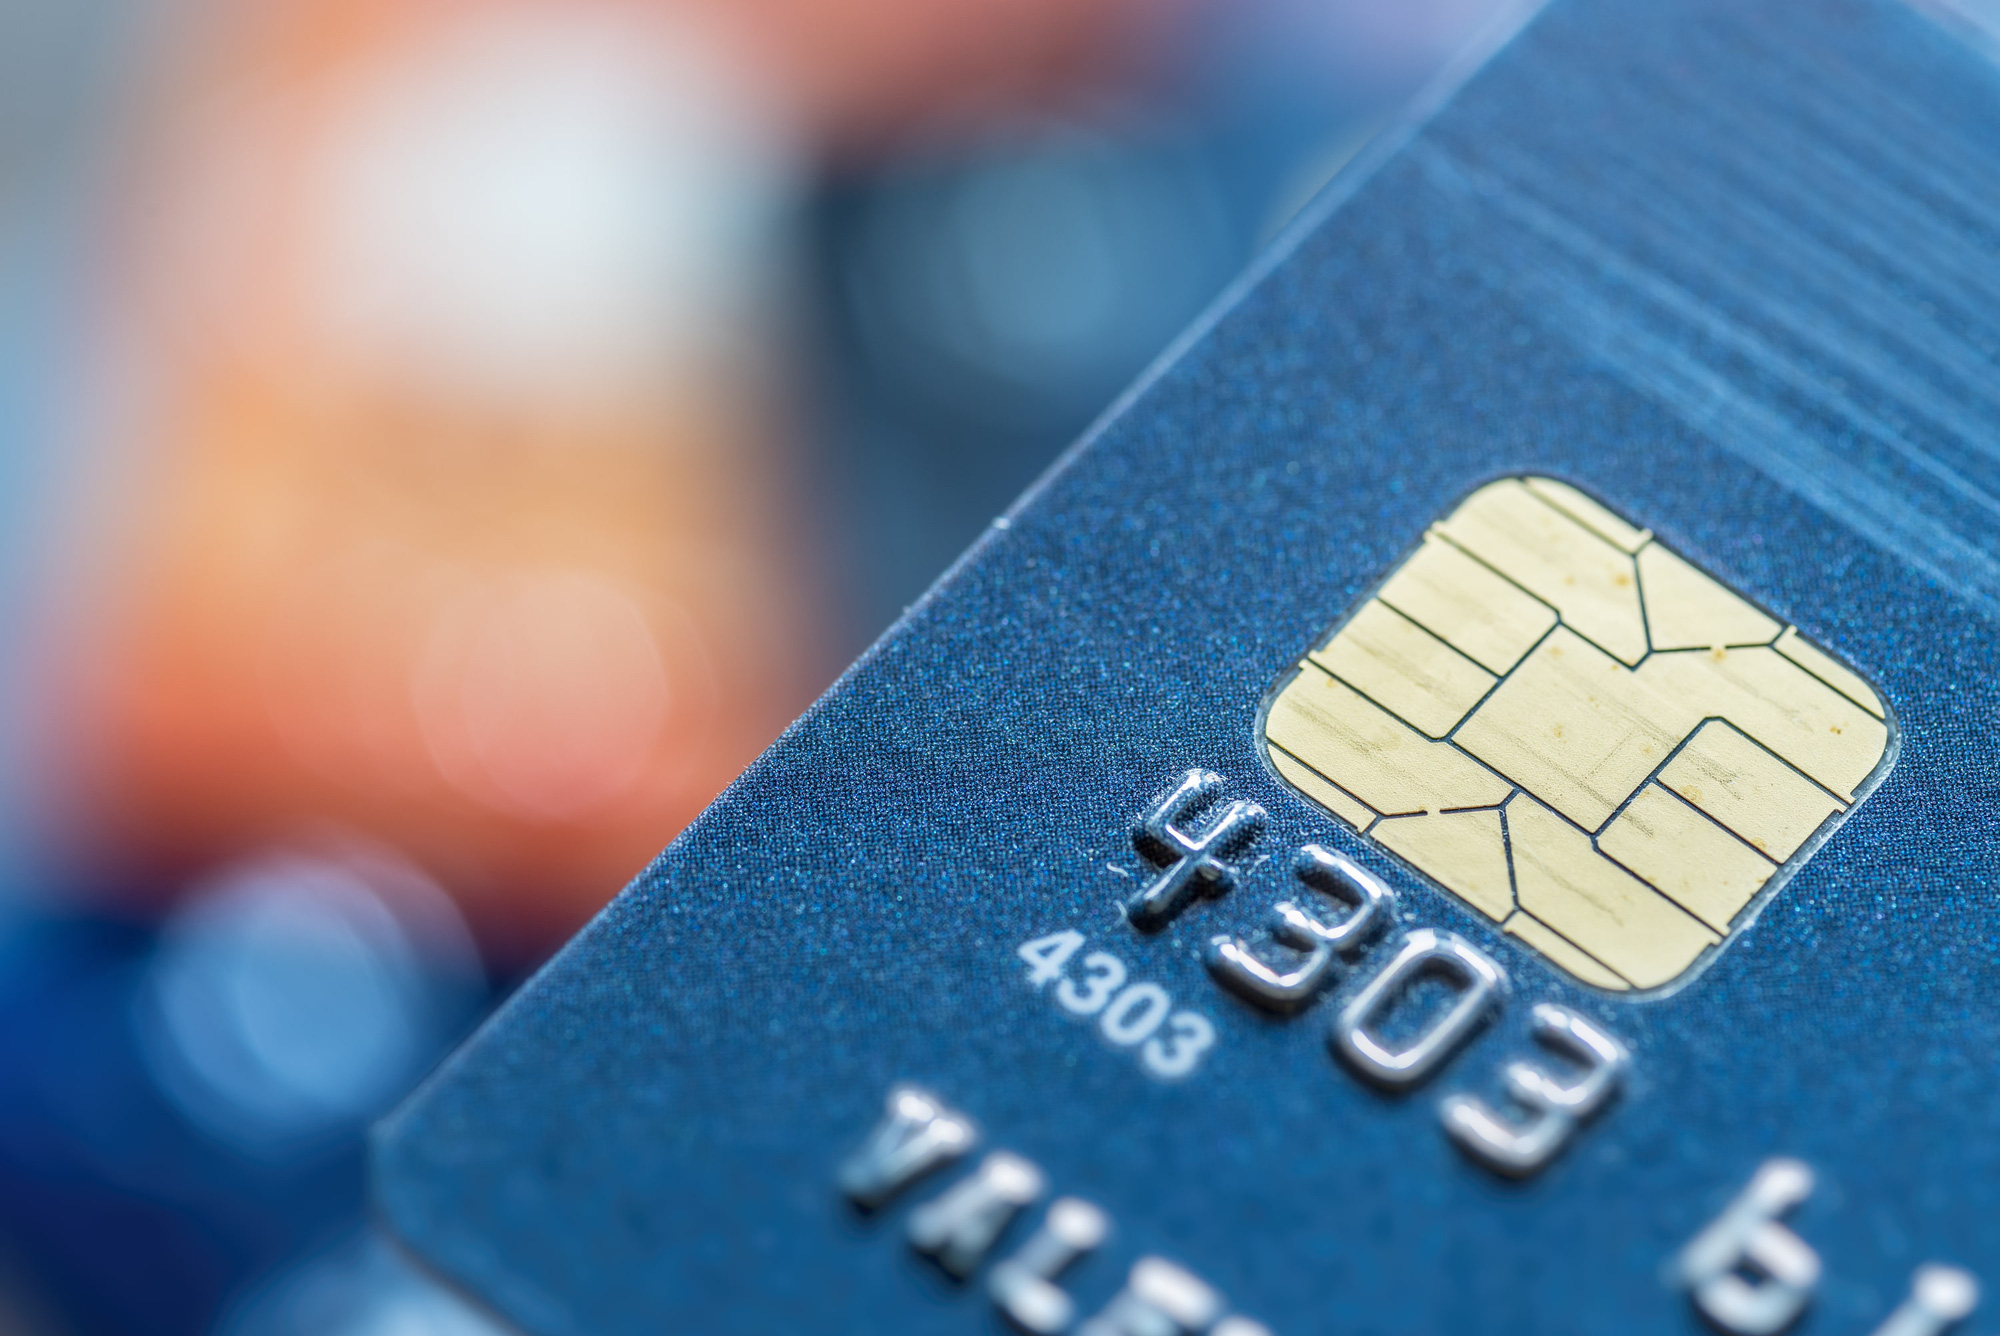 Thẻ ATM gắn chip có tính bảo mật cao và tránh được các hình thức gian lận trong quá trình giao dịch. Hãy sử dụng thẻ ATM gắn chip của chúng tôi để yên tâm và tiện lợi trong việc chuyển khoản!